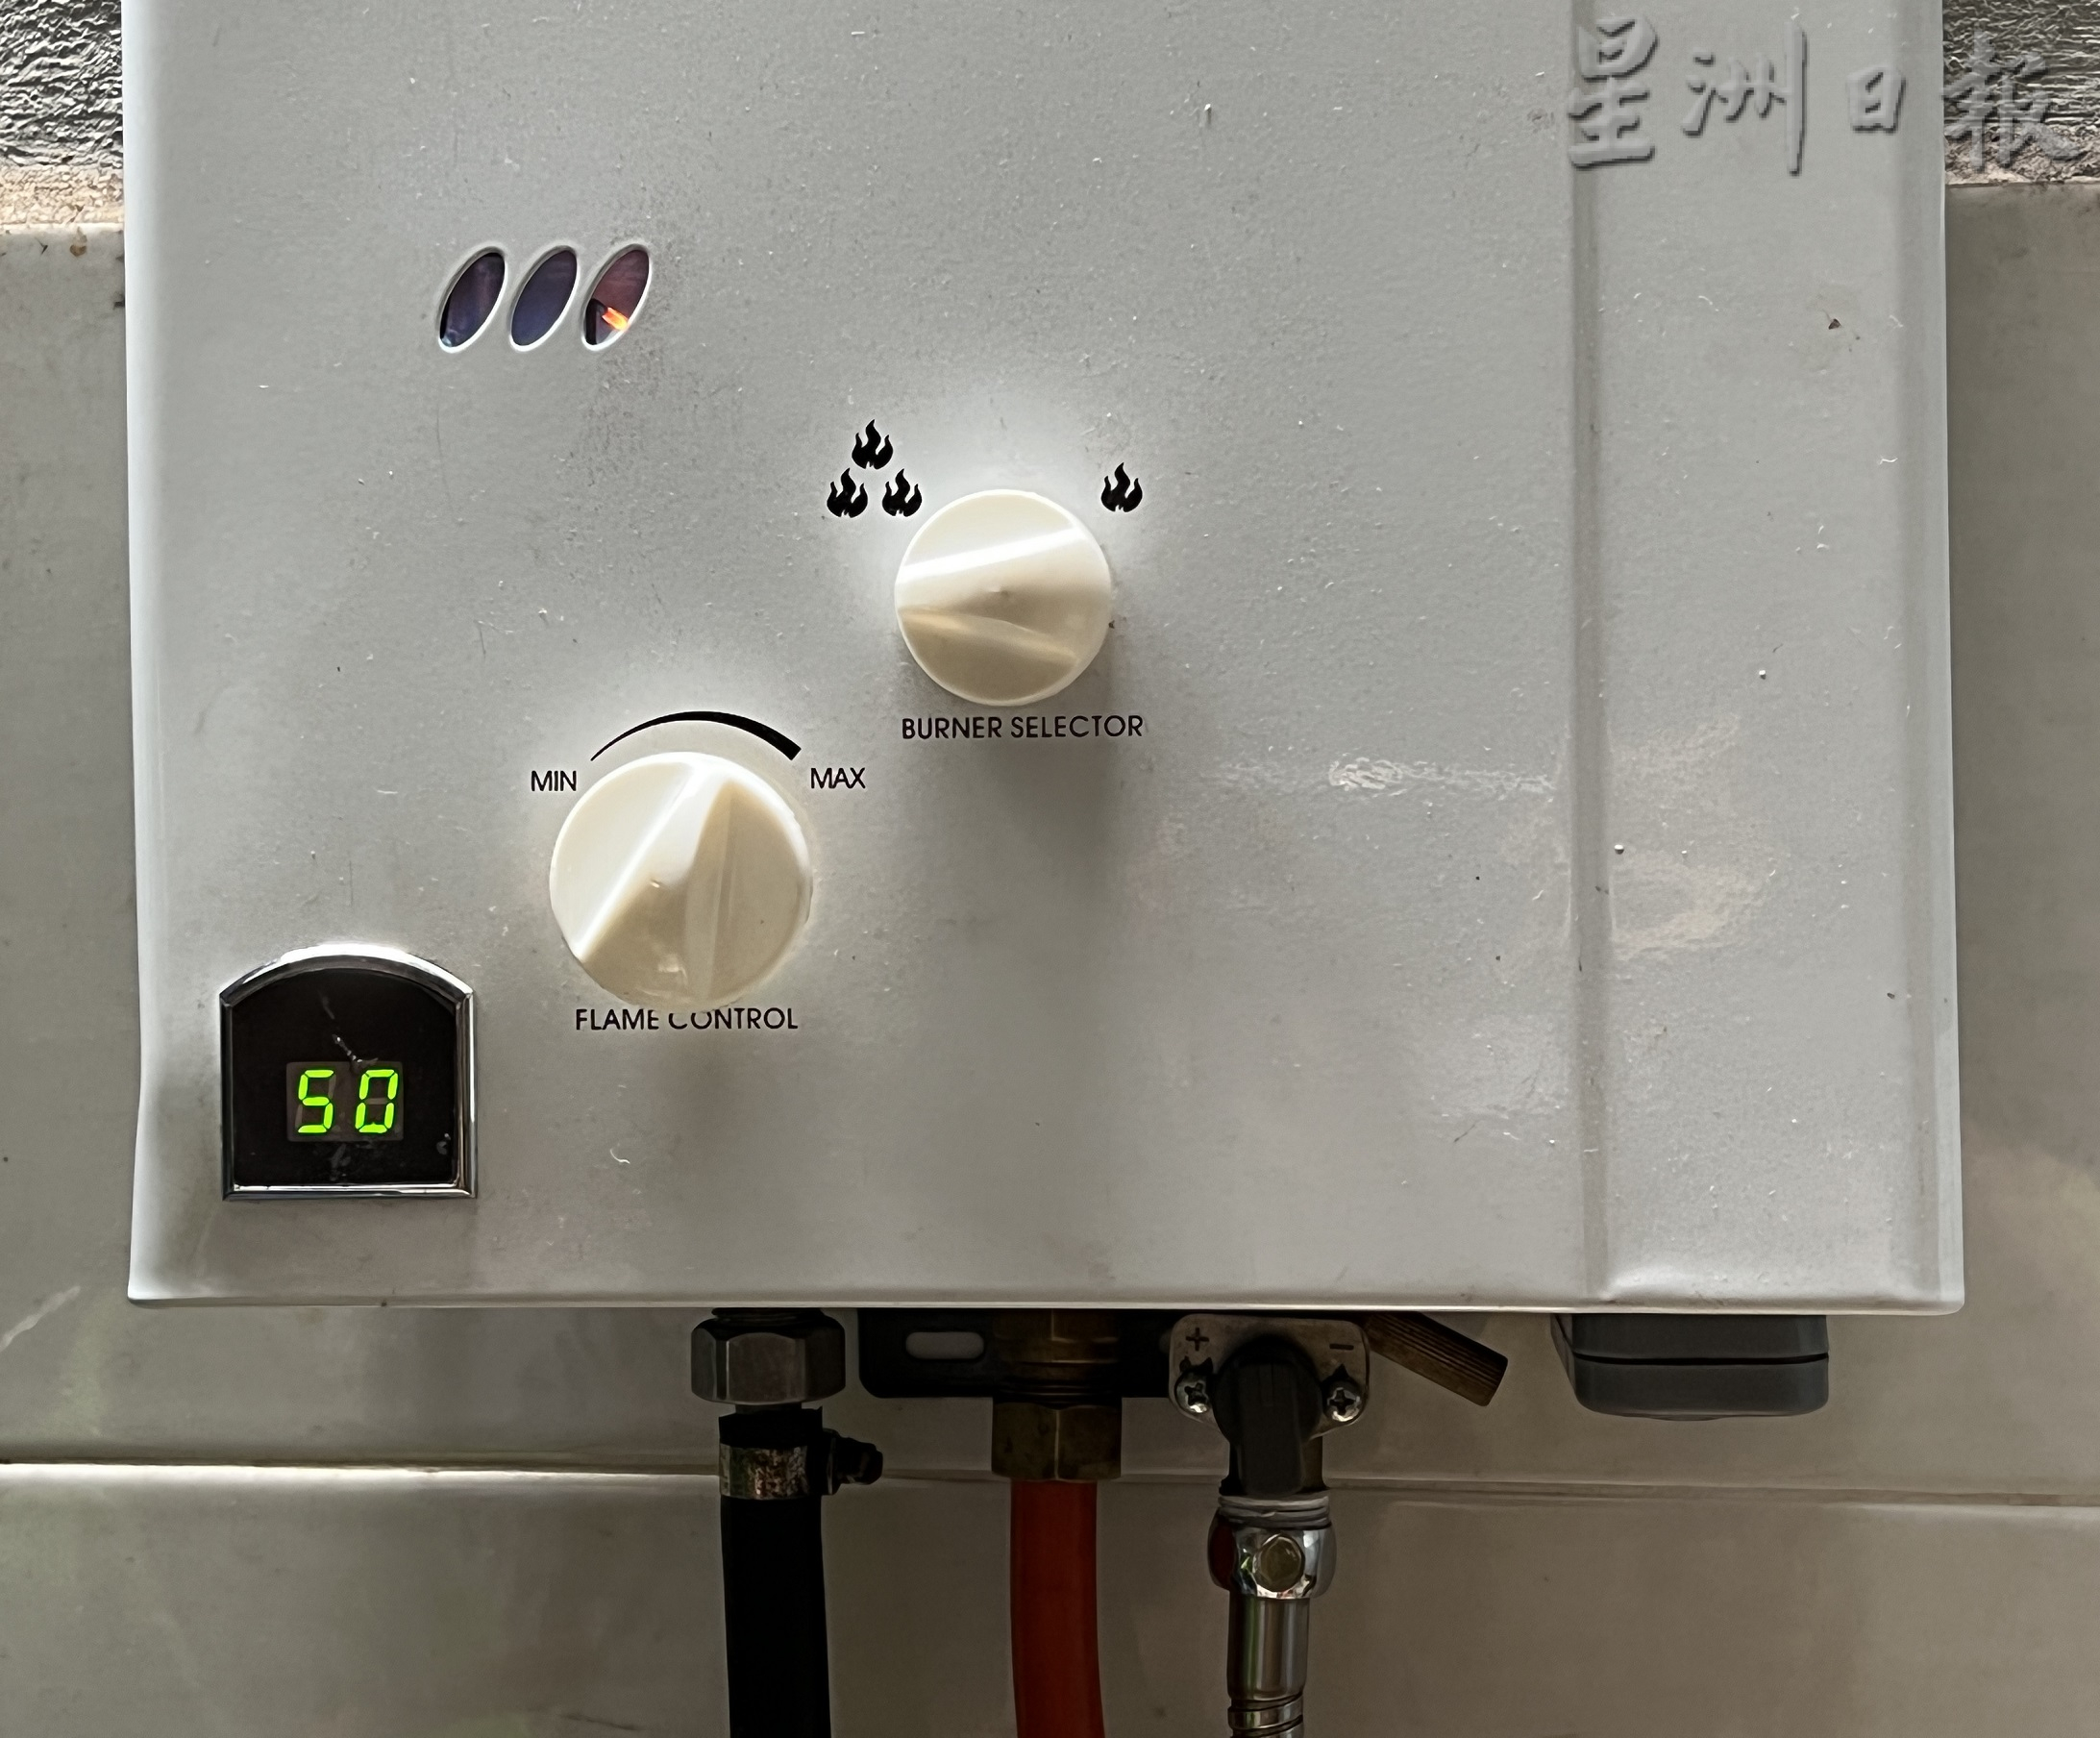 大霹雳时事焦点／煤气热水器本身不可能漏电 热水器商：或因墙内深藏电缆漏电引致